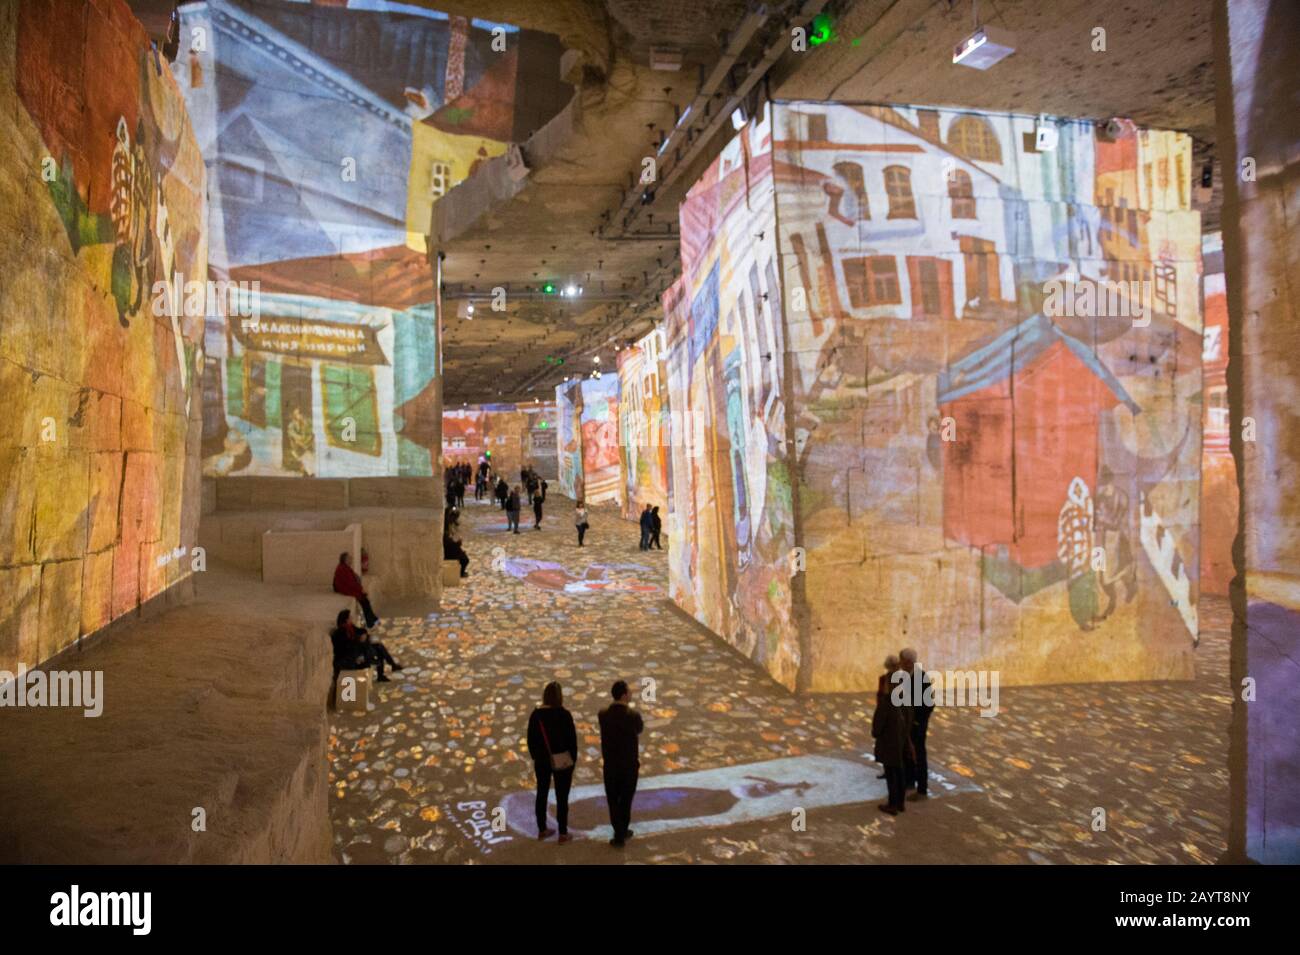 Les Carrieres de Lumieres (carrières de lumières) est un spectacle multimédia qui projette des milliers d'images d'art sur l'intérieur d'un calcaire abandonné Banque D'Images